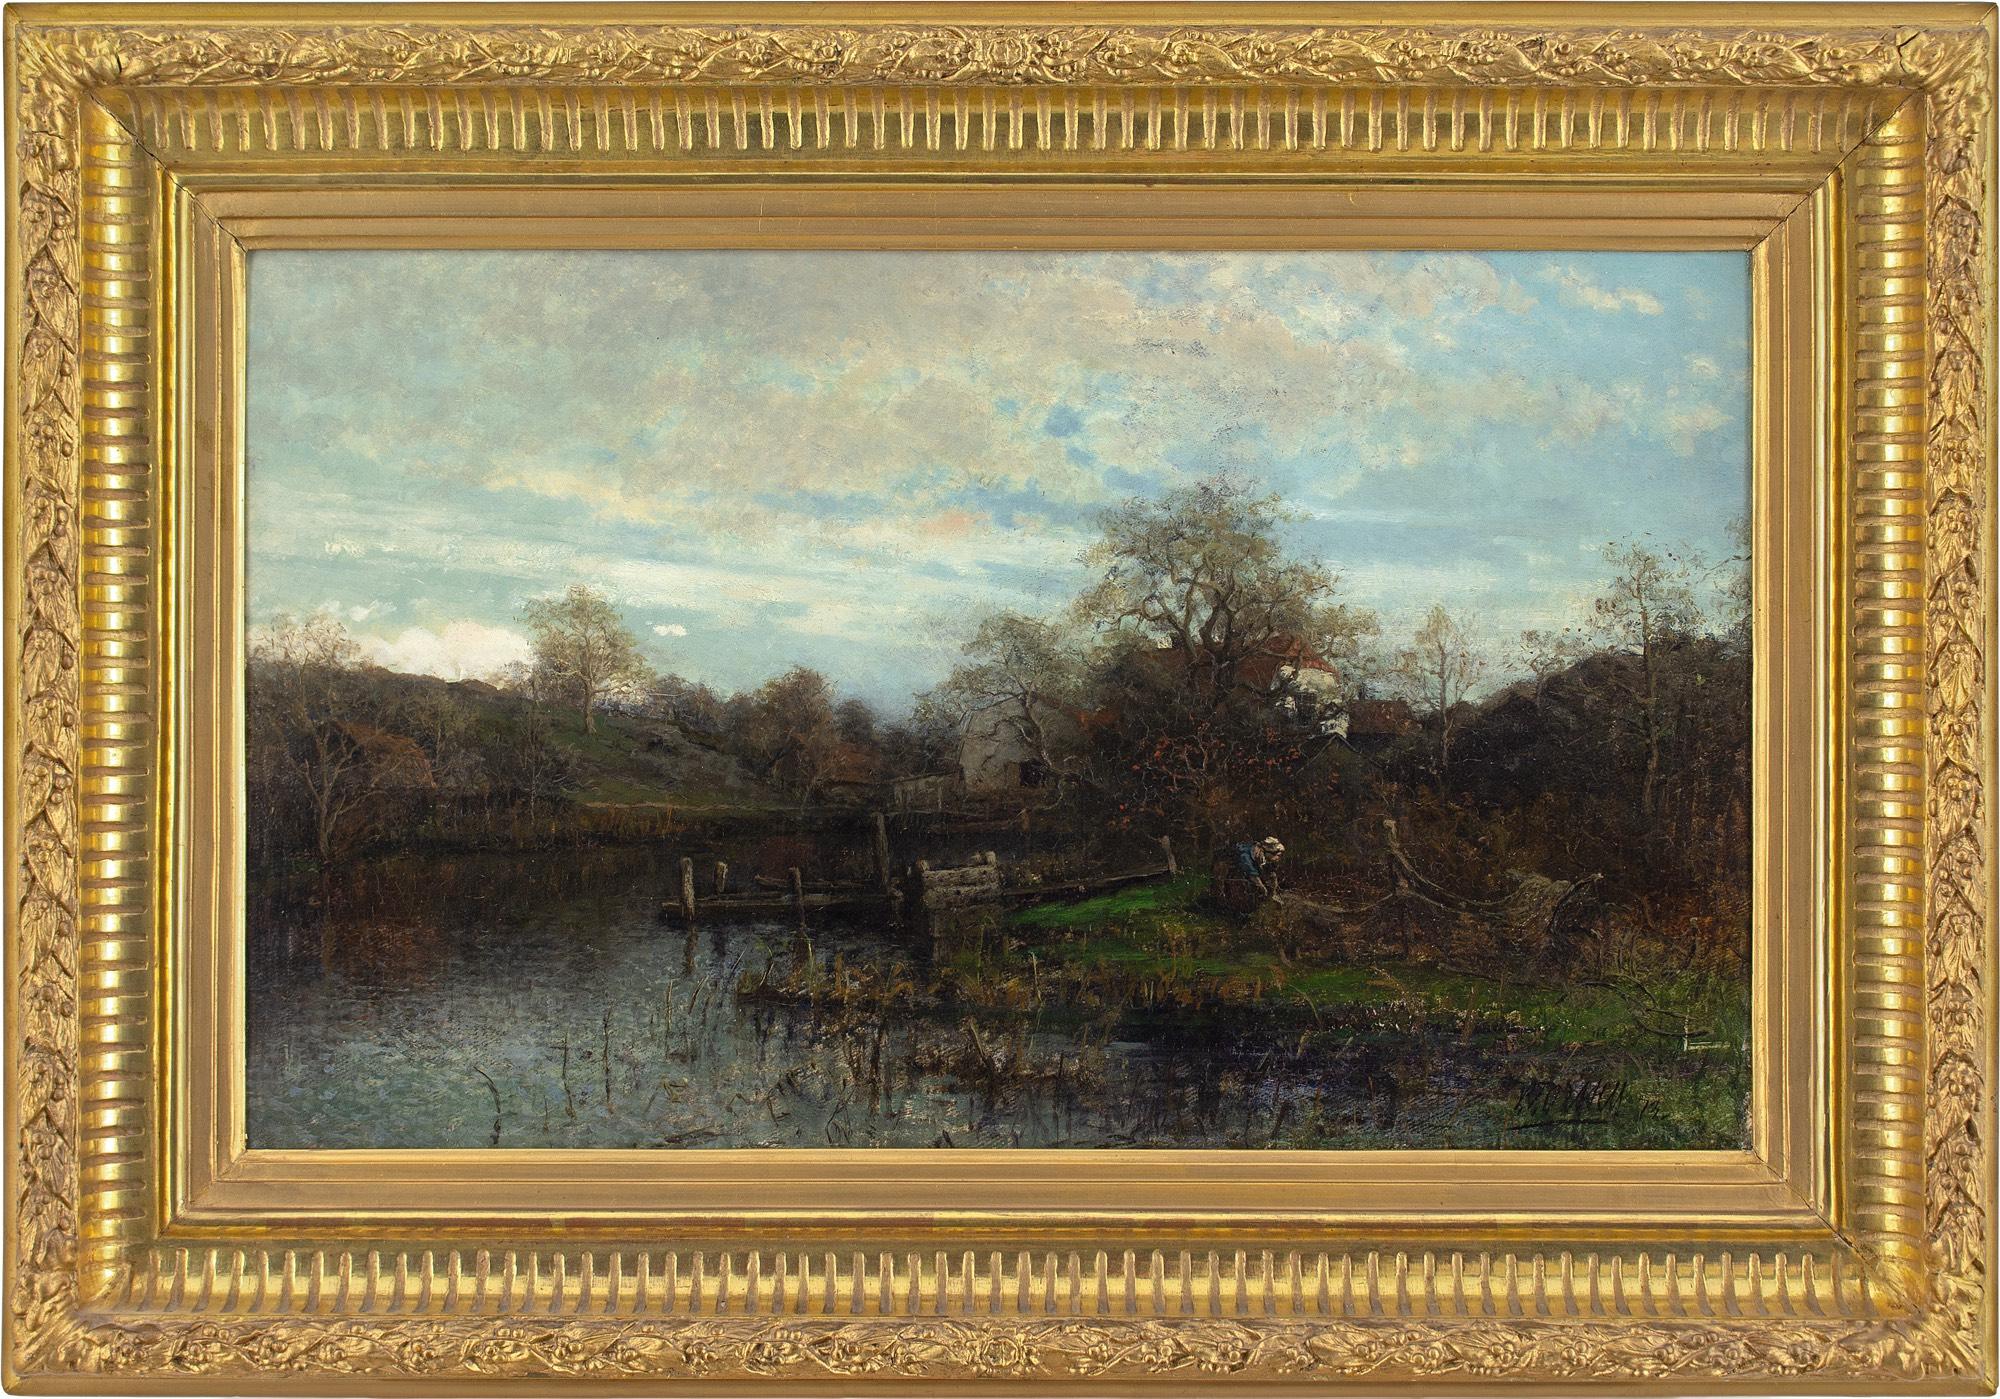 Cette peinture à l'huile du XIXe siècle de l'artiste suédois Victor Forssell (1846-1931) représente un paysage fluvial avec des chalets et des personnages.

Peinte en 1873, cette œuvre sublime illustre le maniement majestueux d'un artiste célèbre